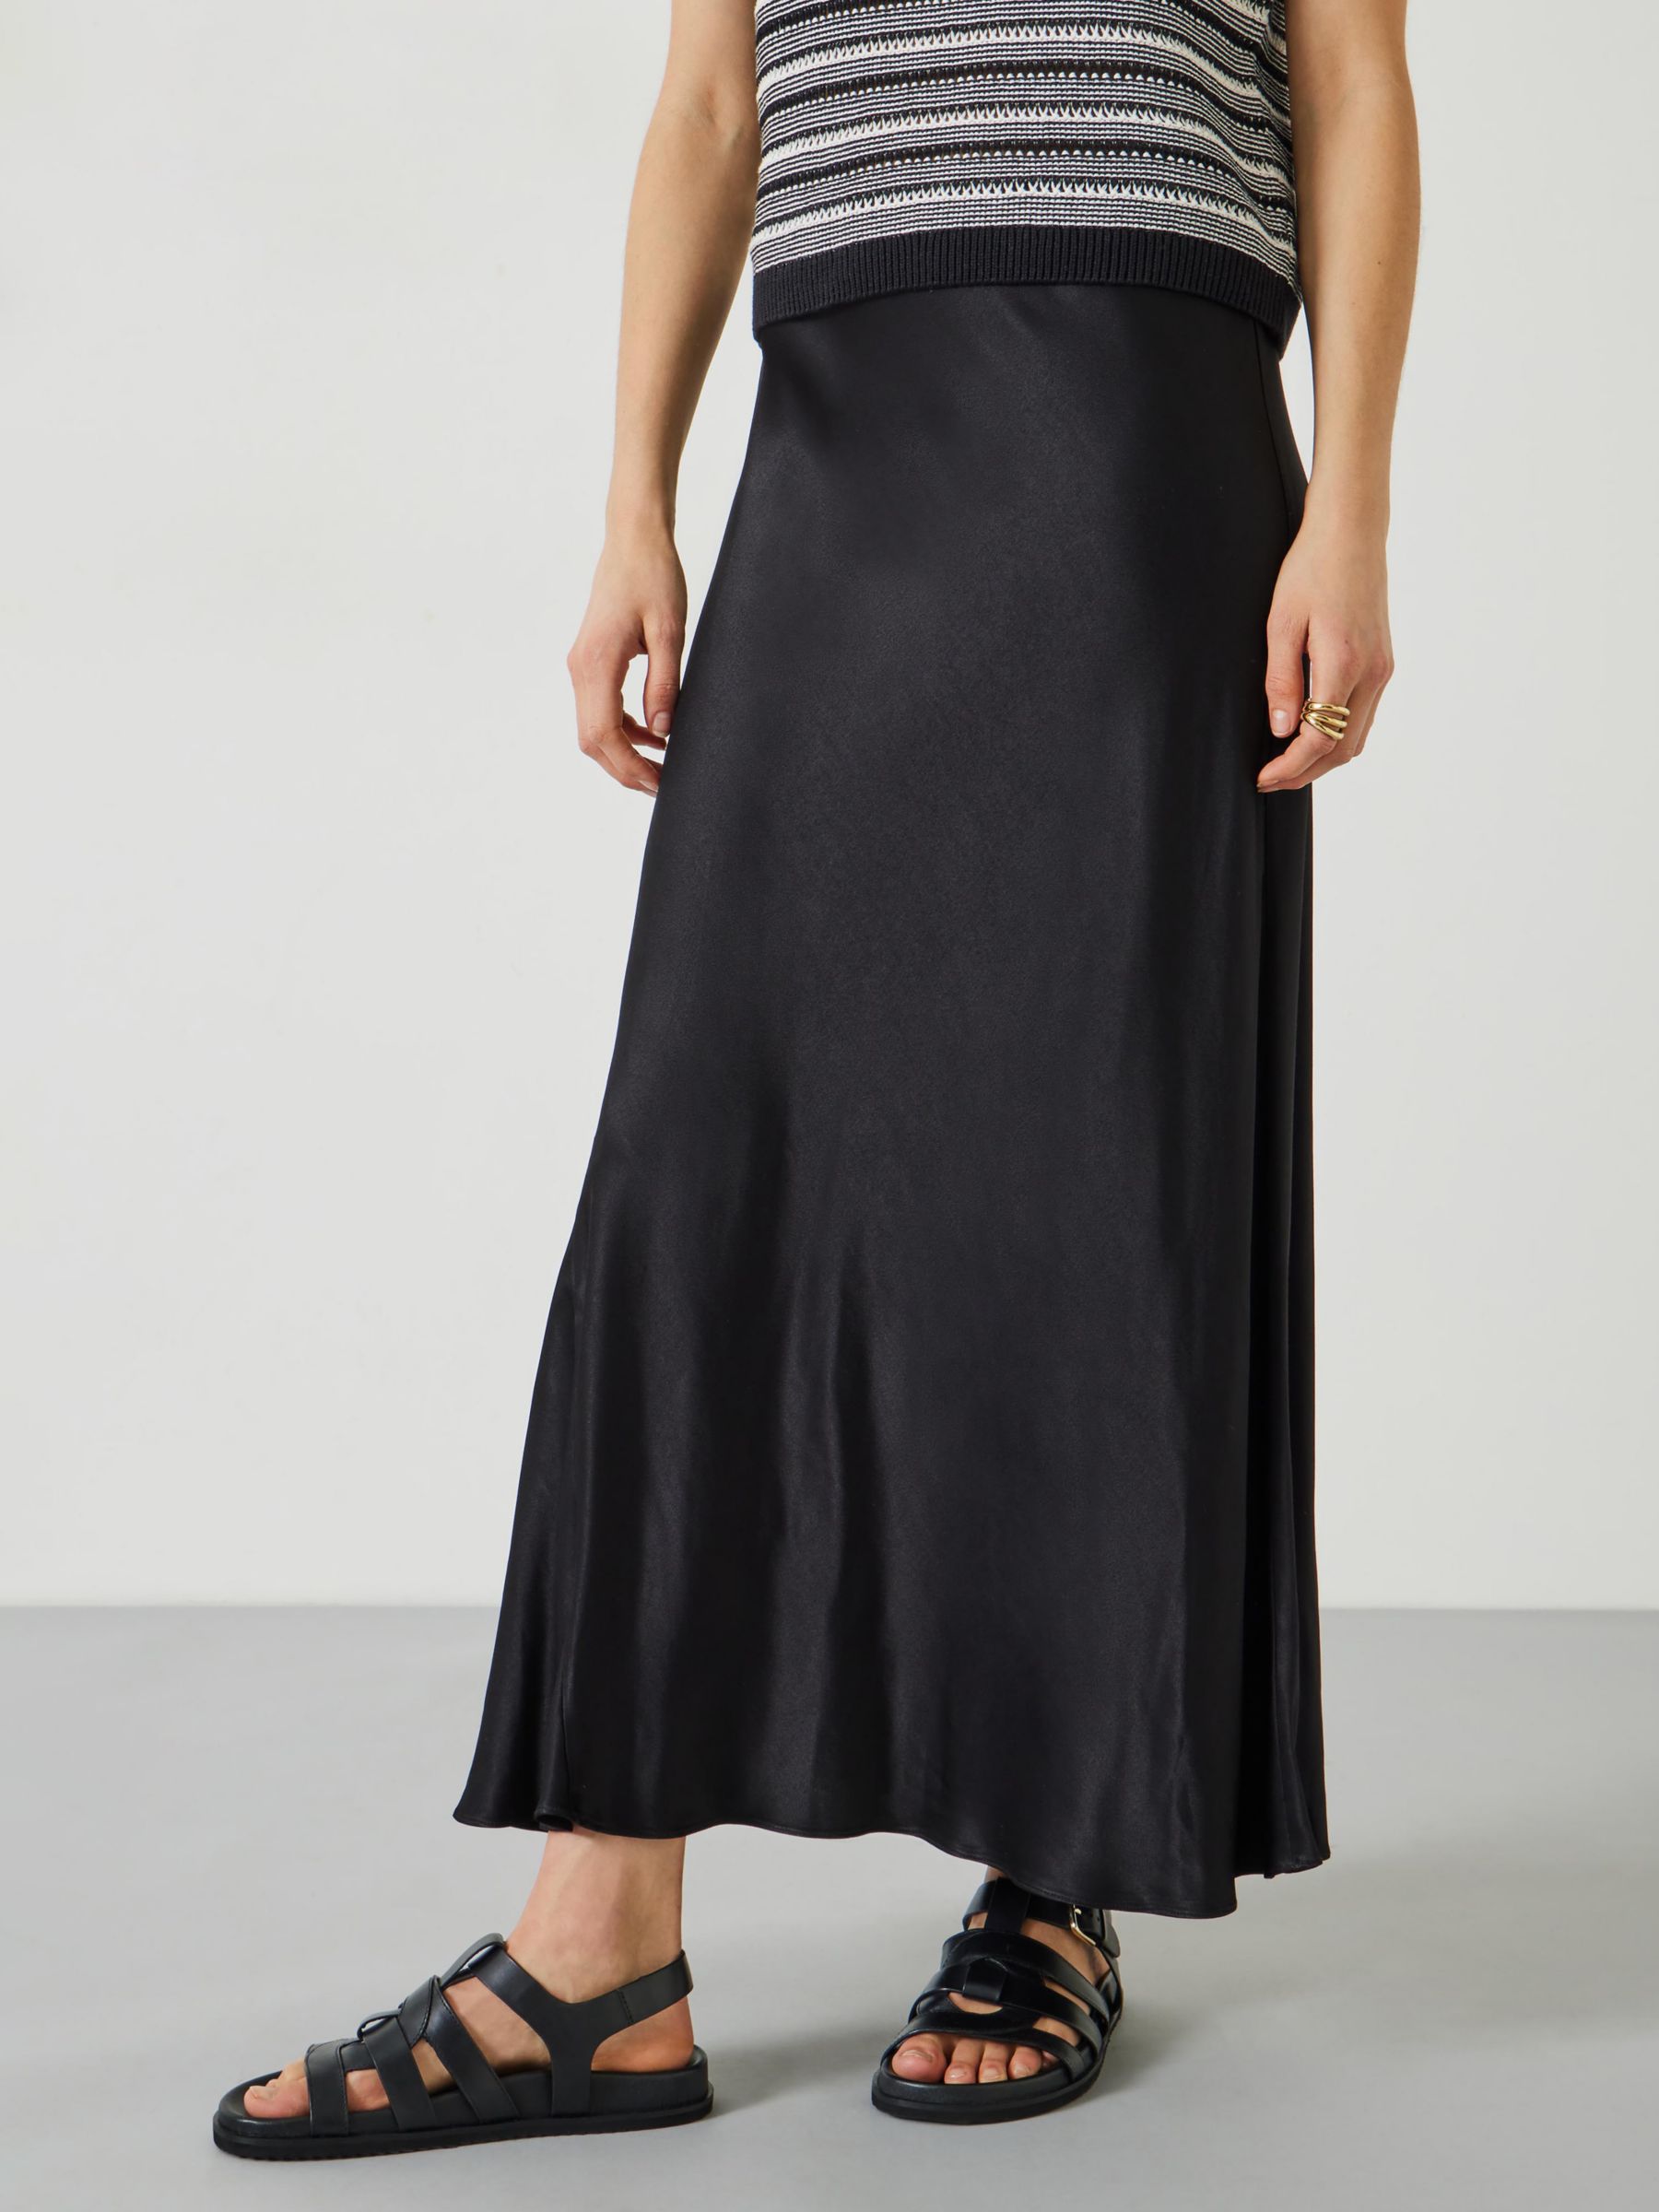 HUSH Remi Satin Maxi Skirt, Black, 10